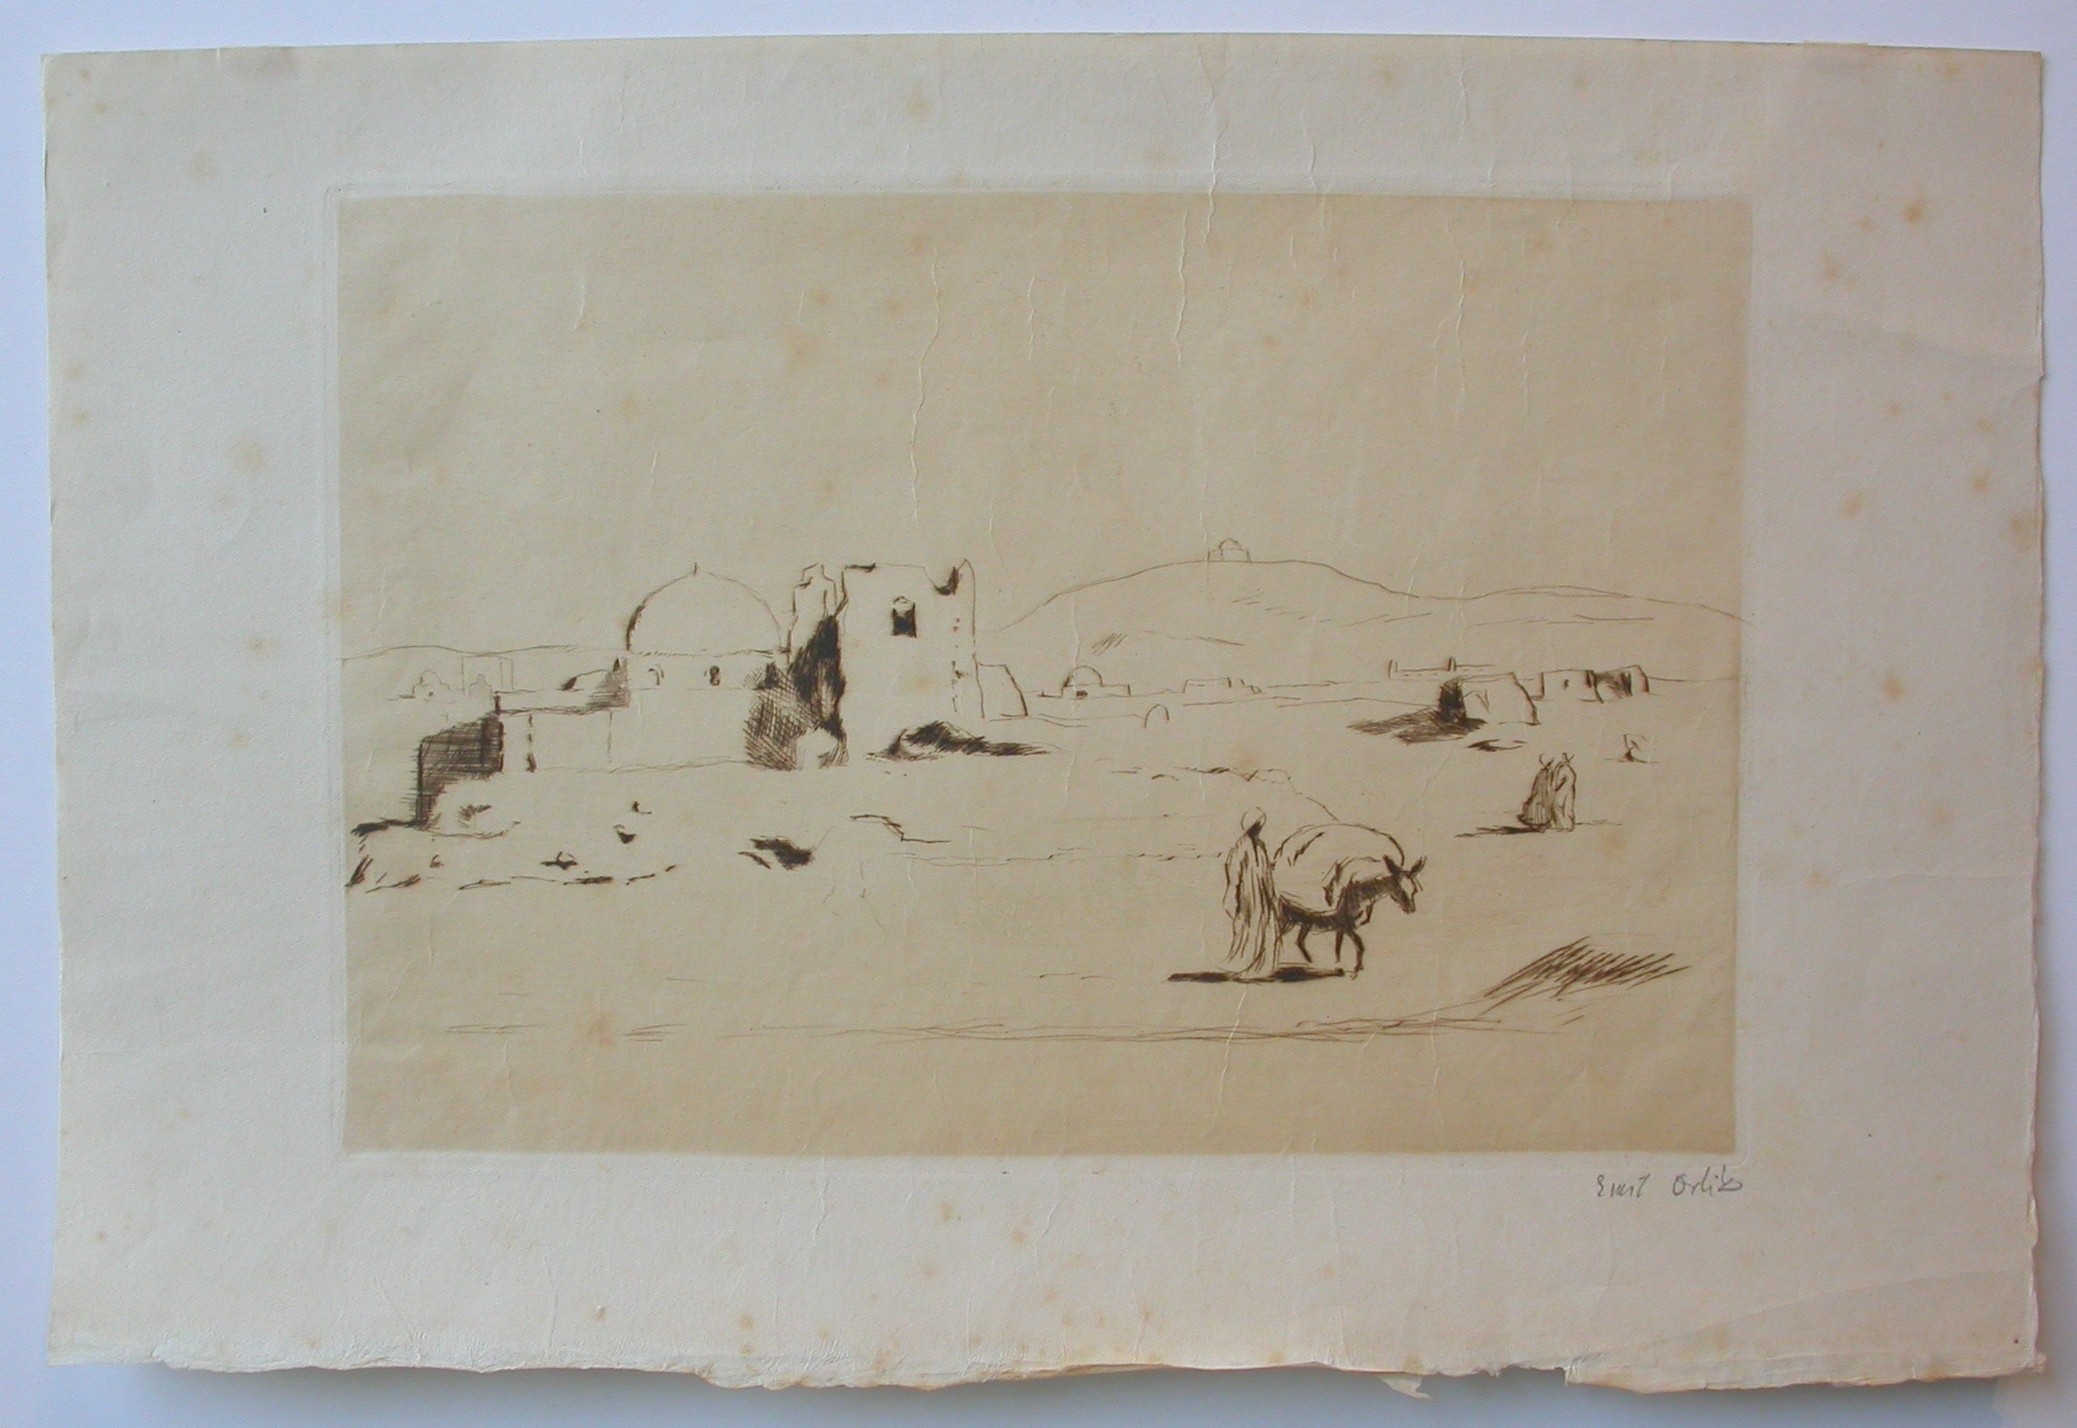 Orlik (1870 - 1932) "Arabische Landschaft"